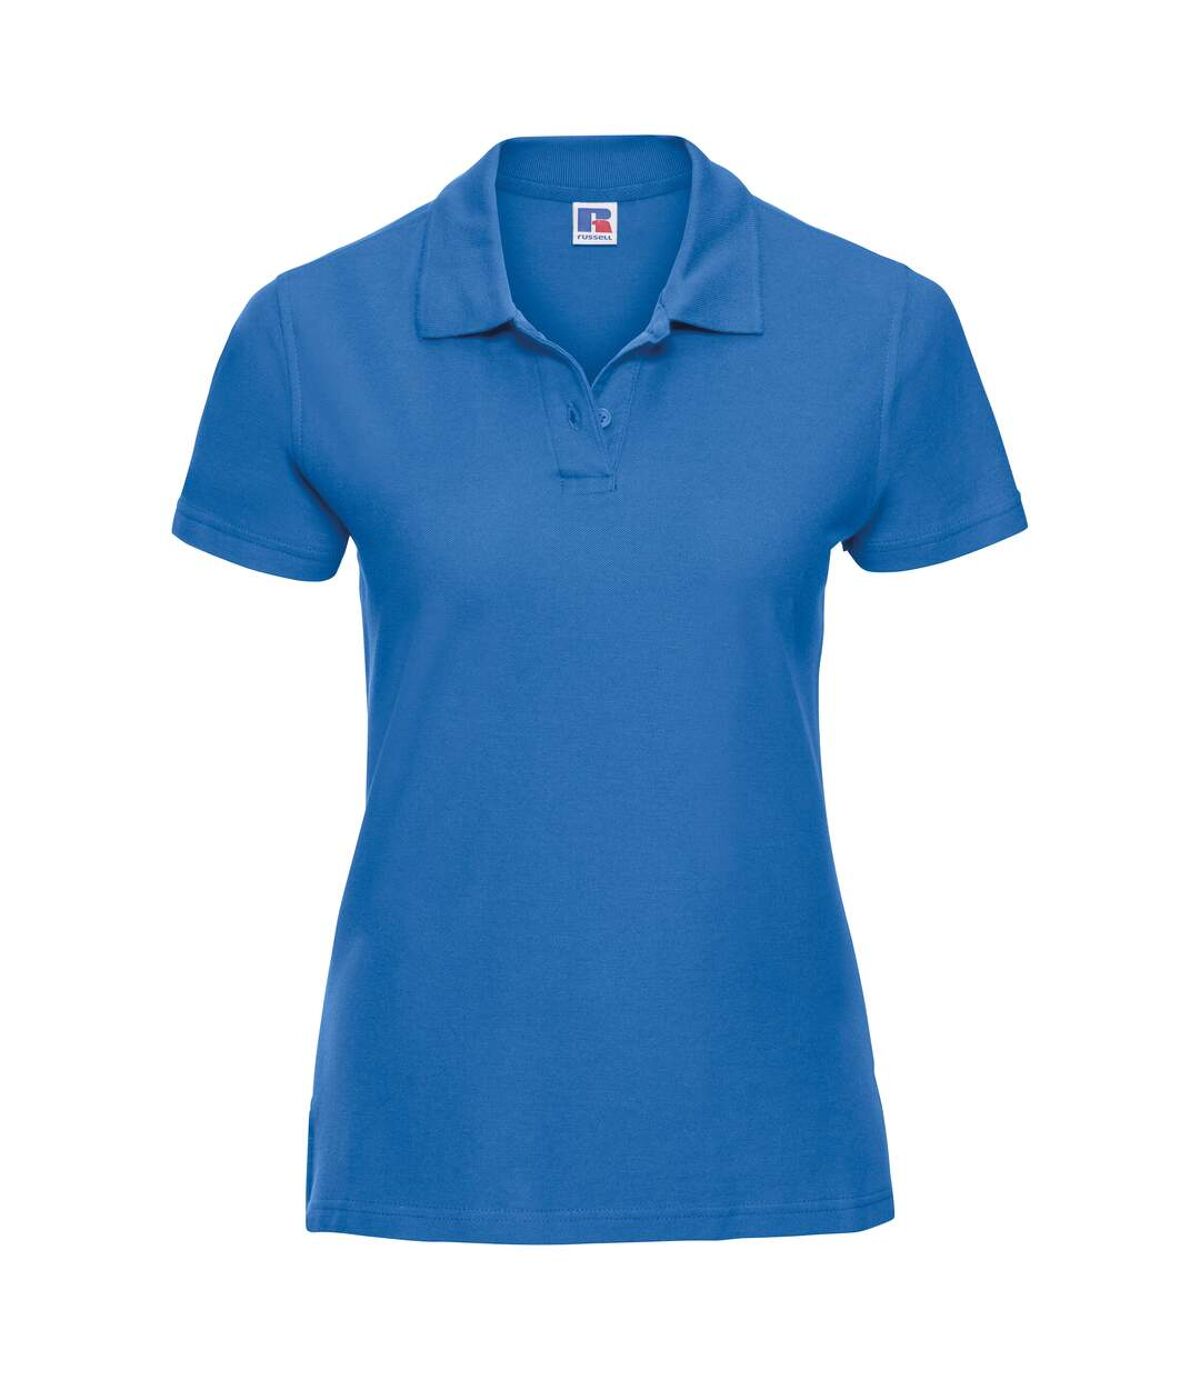 Russell - Polo 100% coton à manches courtes - Femme (Bleu azur) - UTRW3281